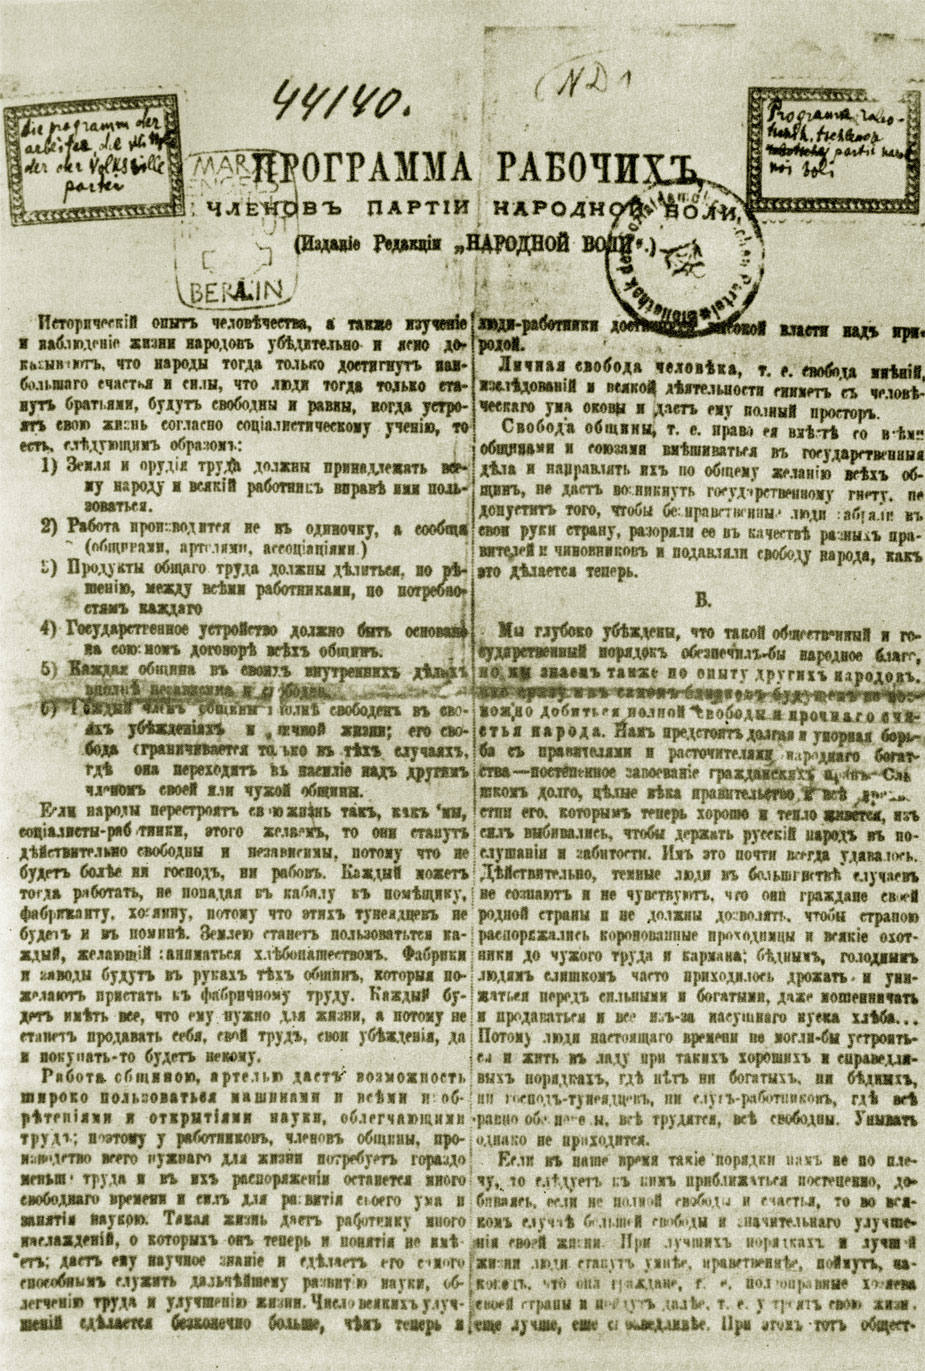 Программа рабочих членов партии 'Народная воля' 1880 г